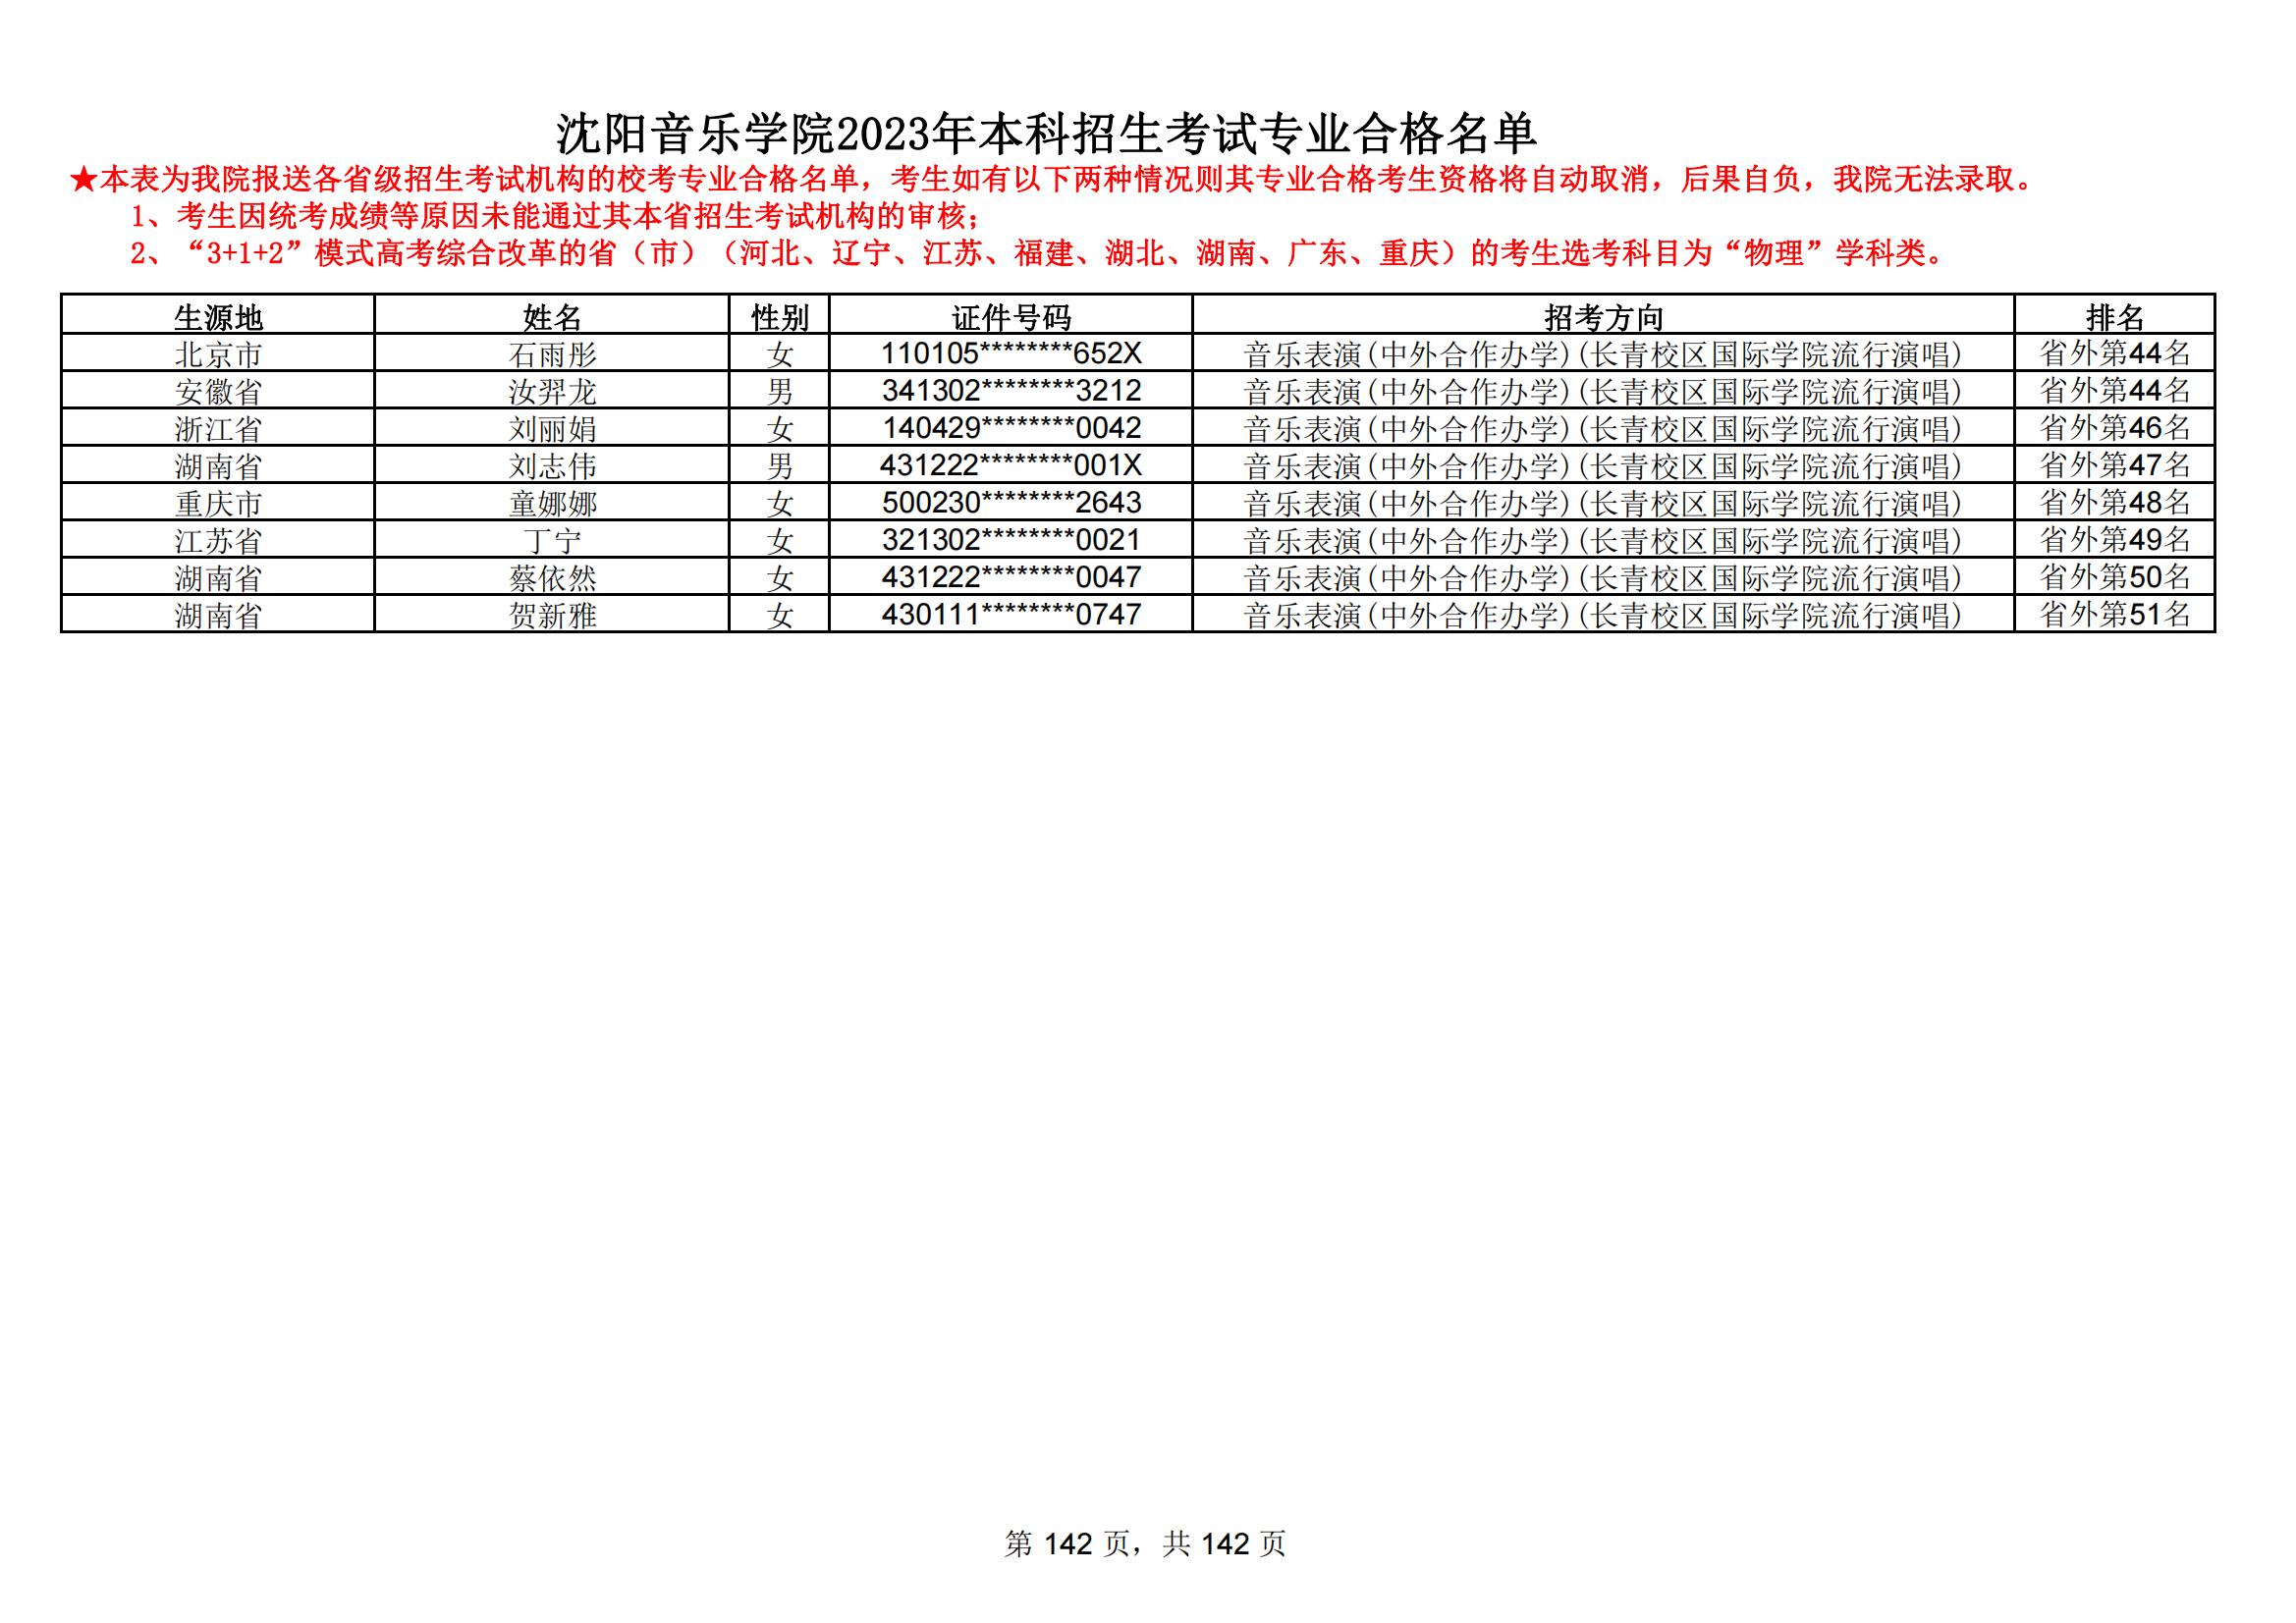 沈阳音乐学院2023年本科招生考试专业合格名单_141.jpg